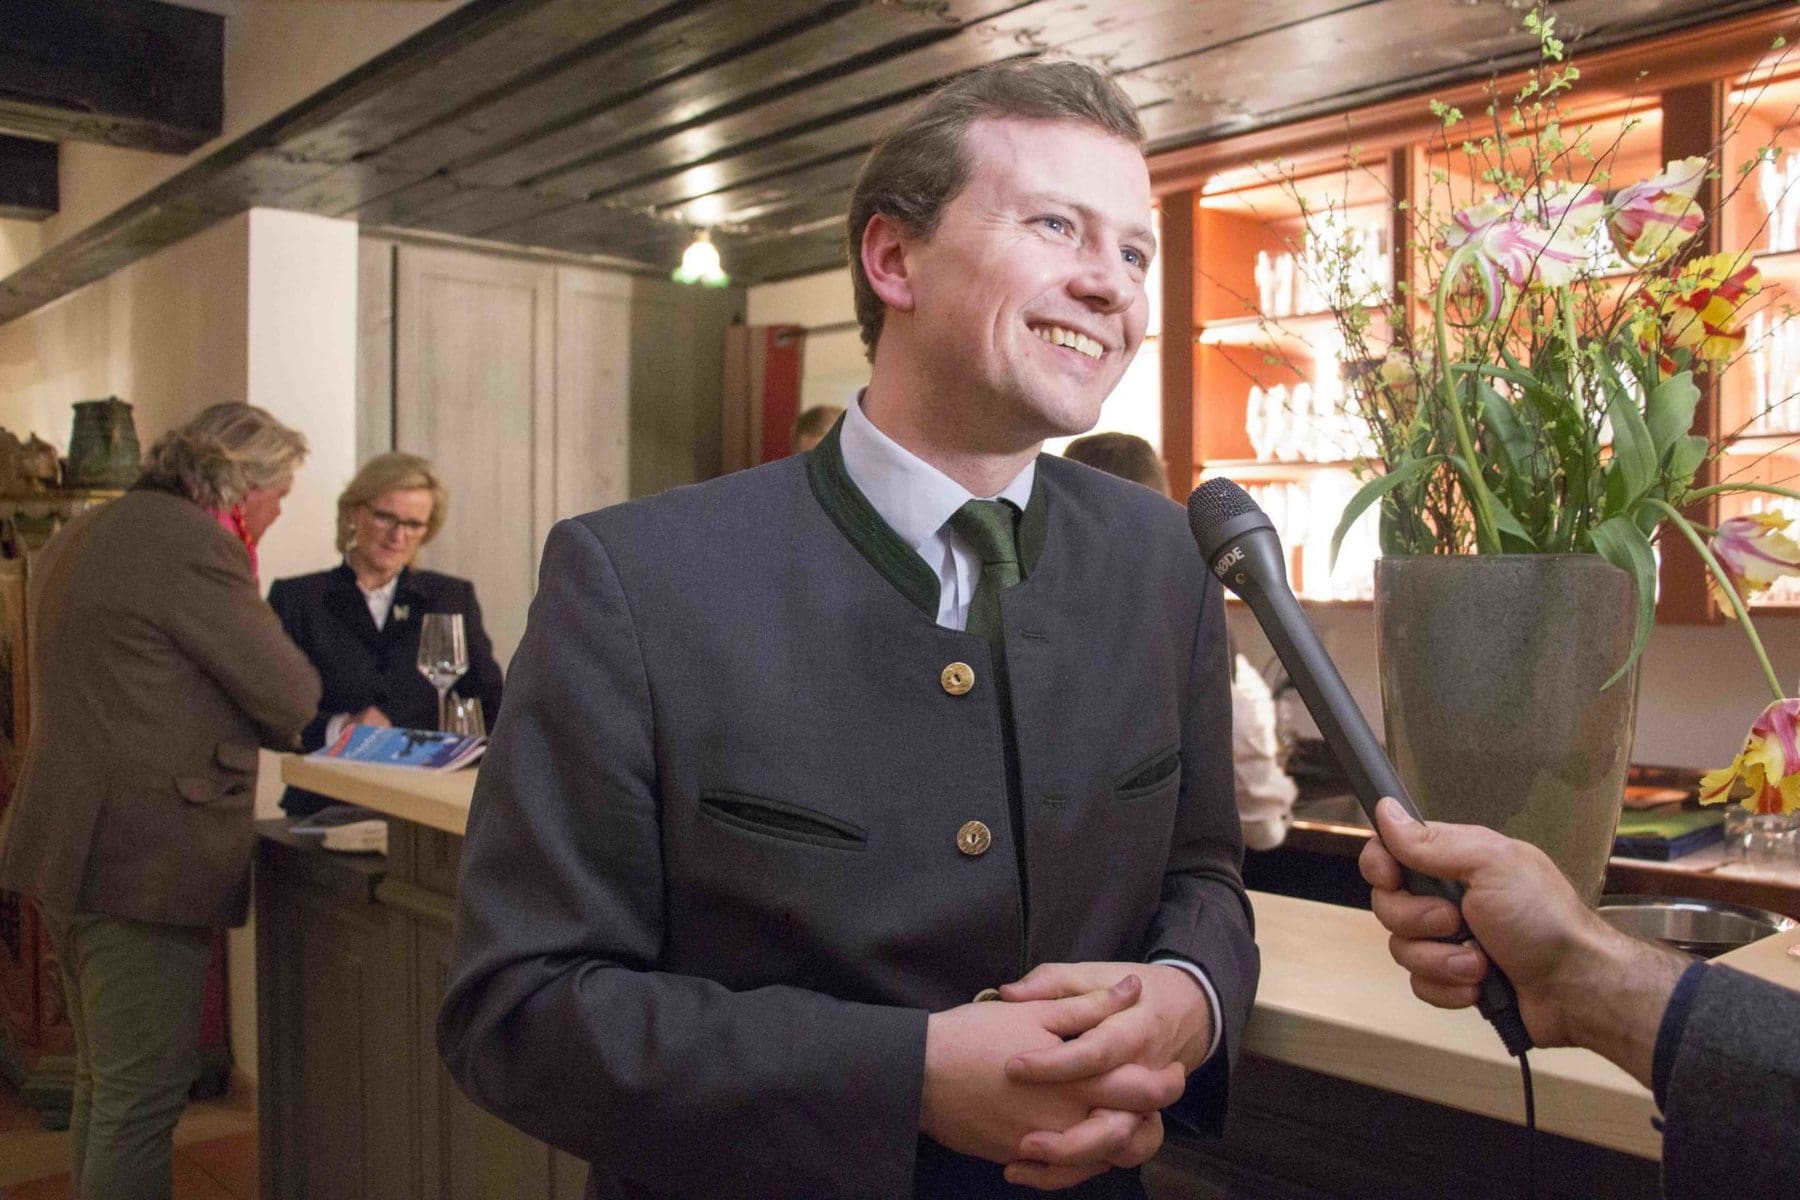 Brauereichef Franz Inselkammer im Interview im August und Maria.